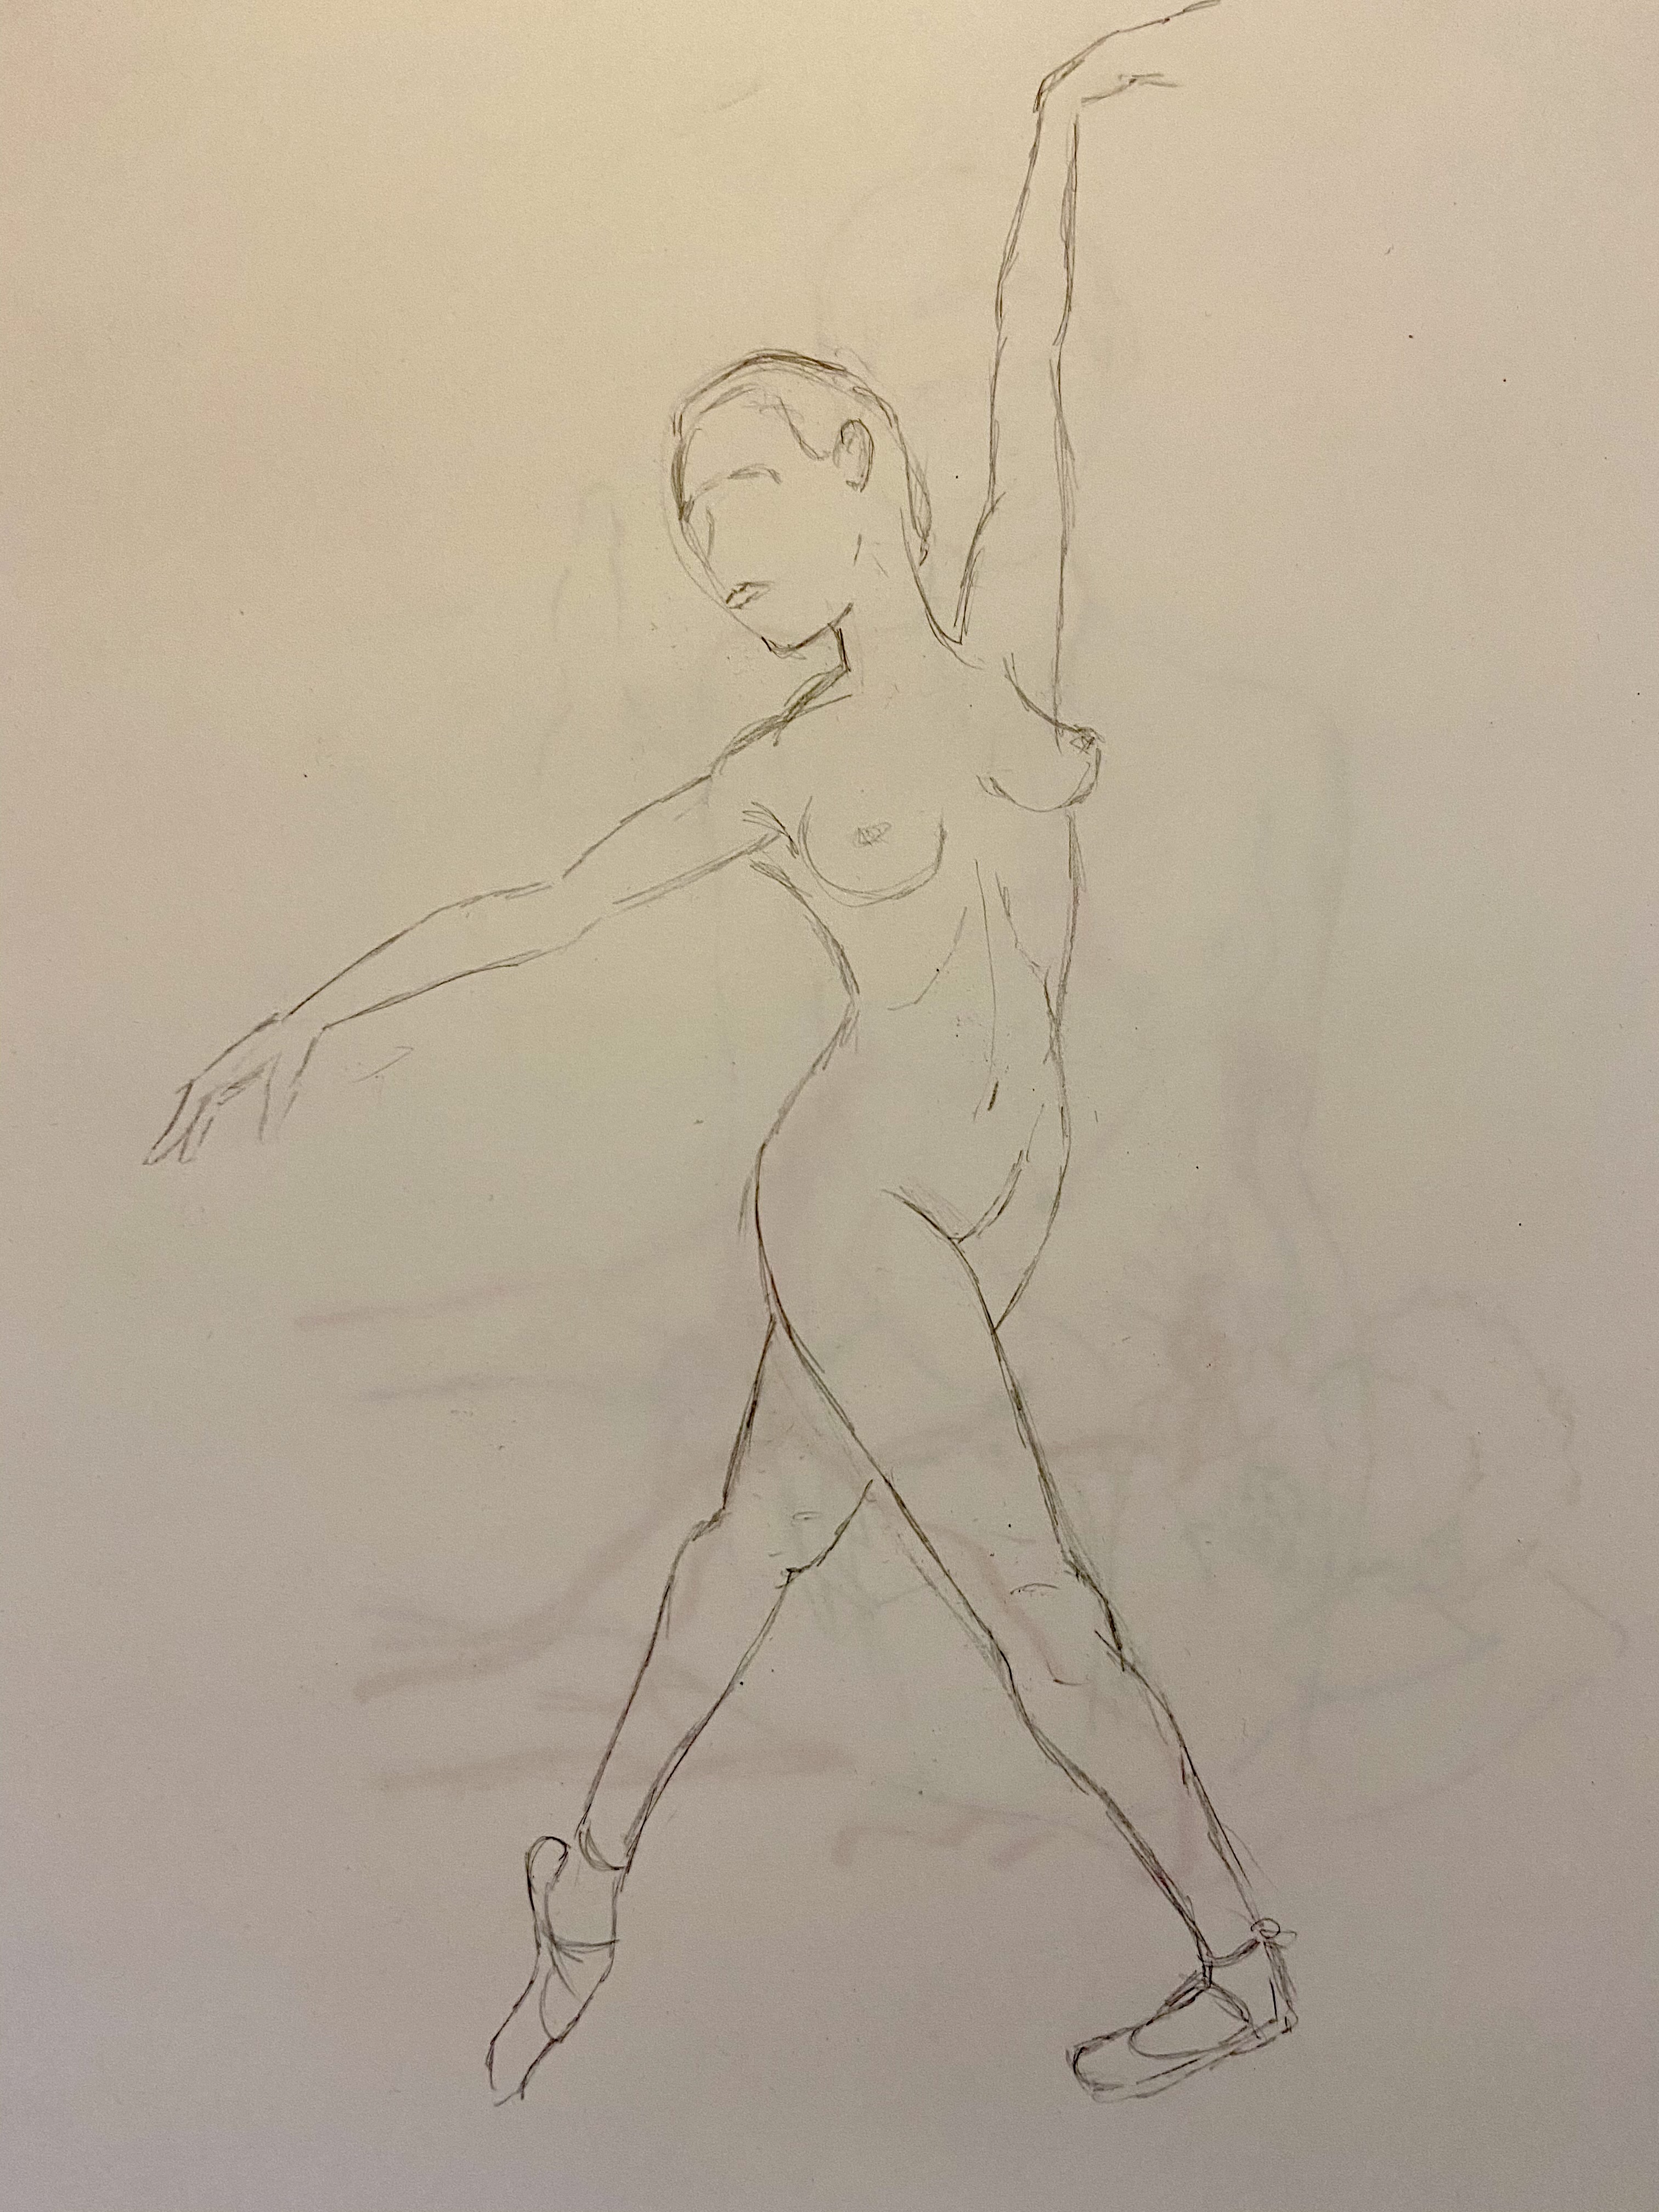  Ãtude danseuse crayon papier  cours de dessin 